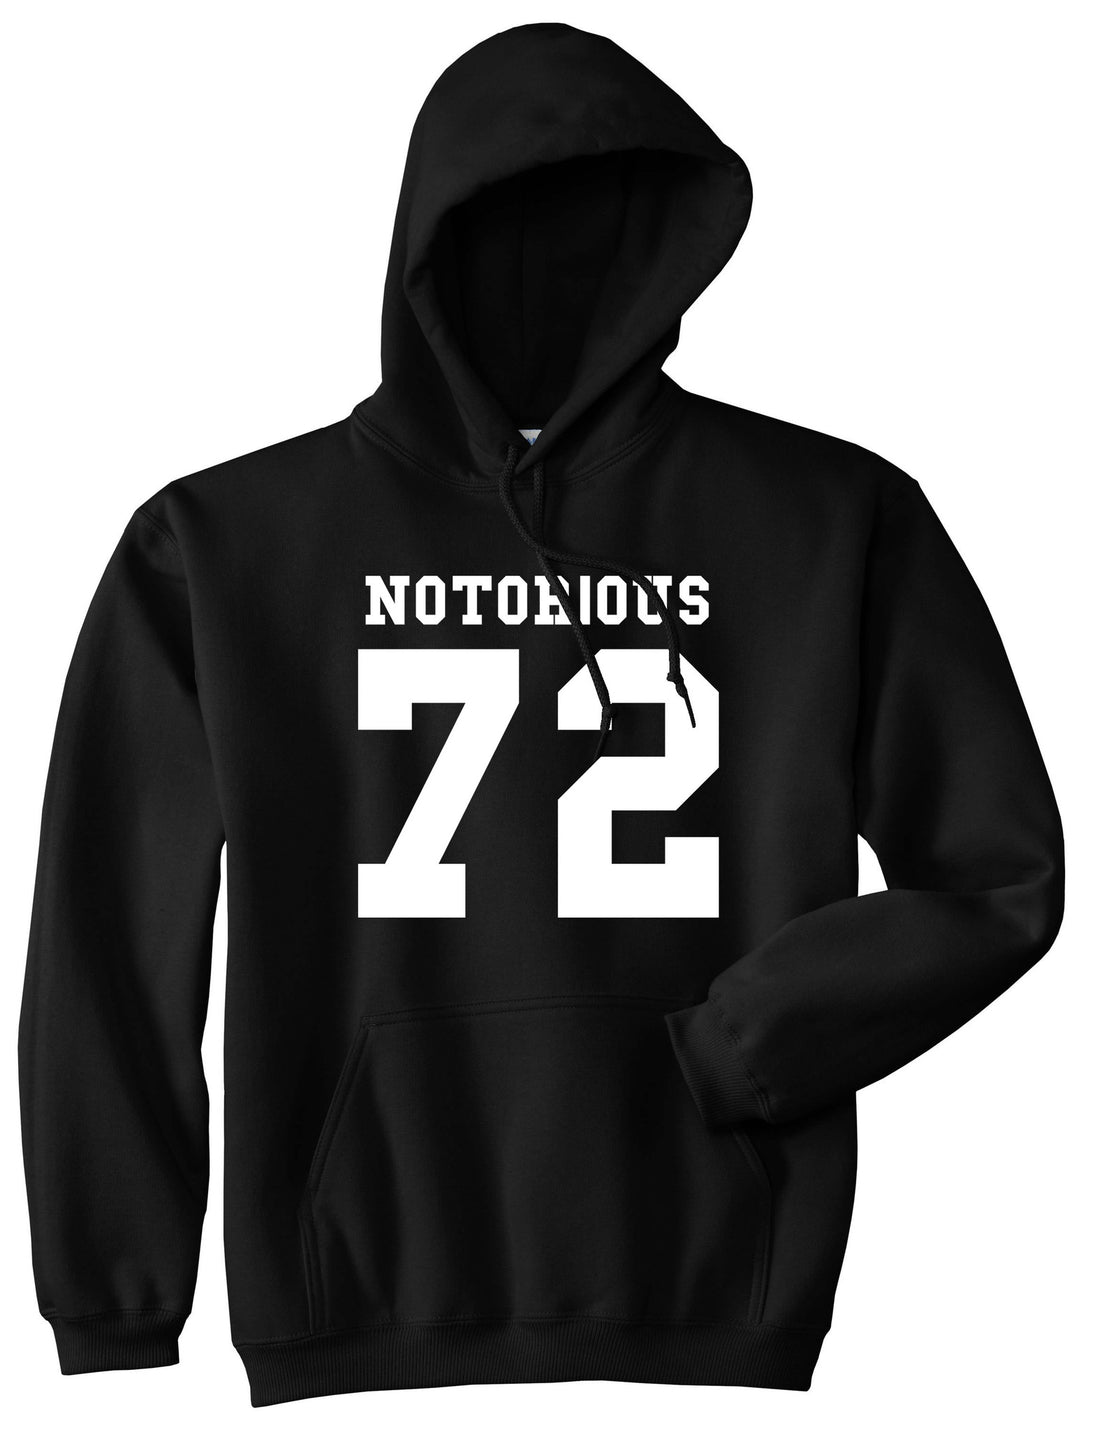 Notorious 72 Team Pullover Hoodie Hoody in Black by Kings Of NY